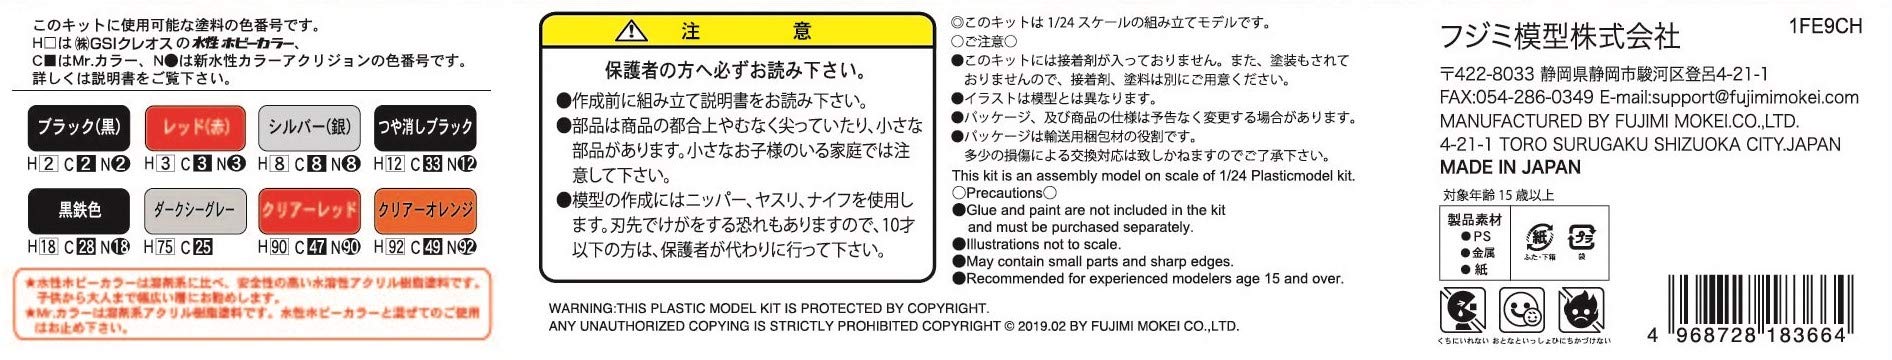 Fujimi Isd-18 Impreza Wrx Type R STi Takumi Fujiwara 1/24 Kit échelle plastique